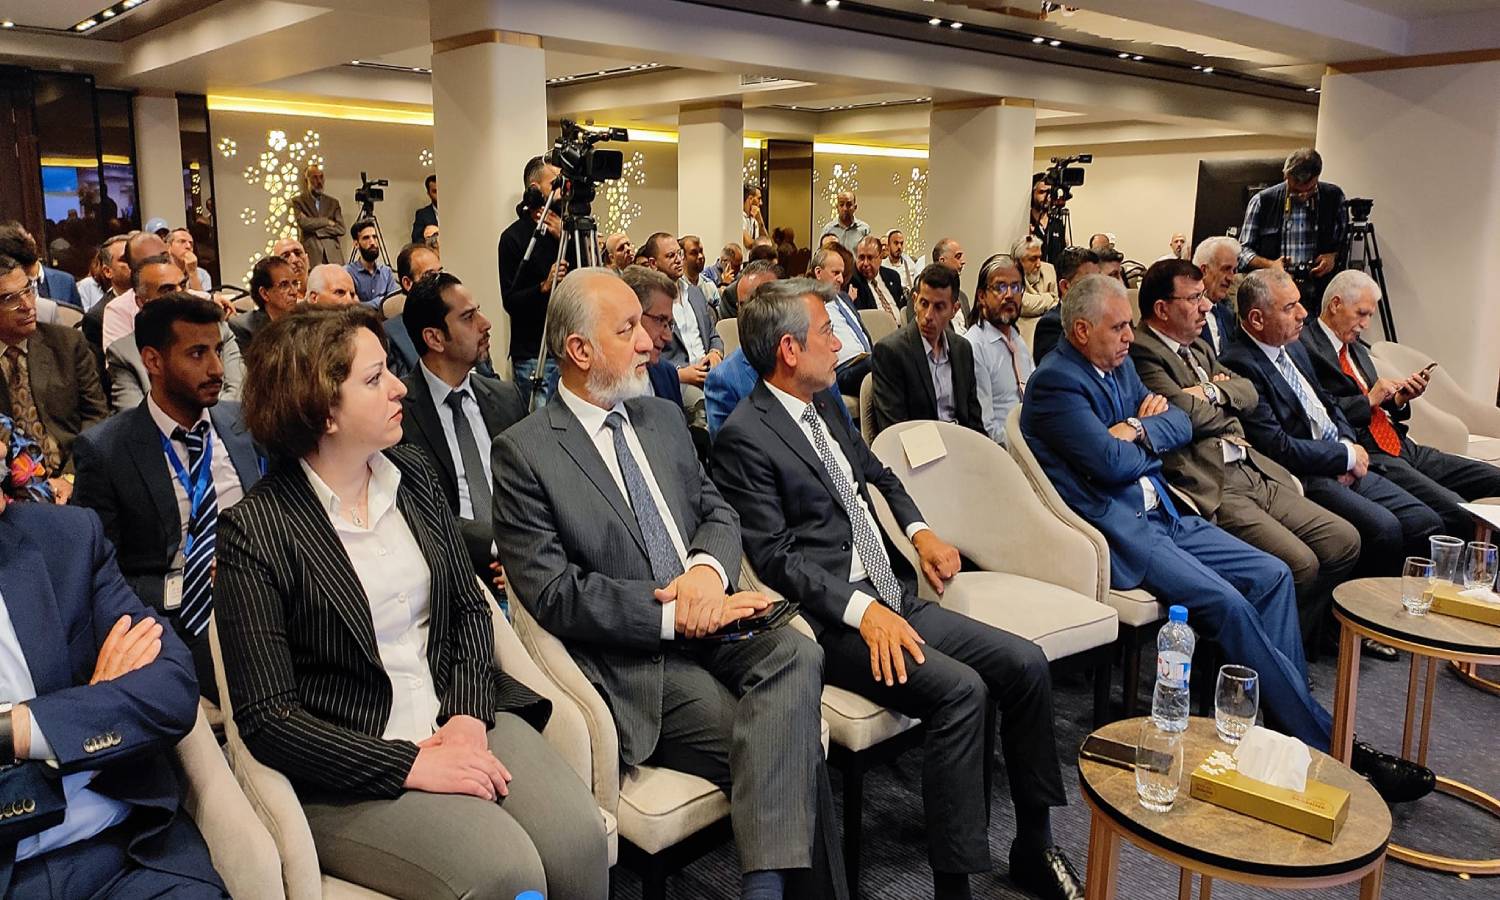 وزير الطاقة اللبناني، وليد فياض، في مؤتمر "الاستثمار في الكهرباء والطاقات المتجددة) بدمشق في 15 من أيار 2022 (سانا)